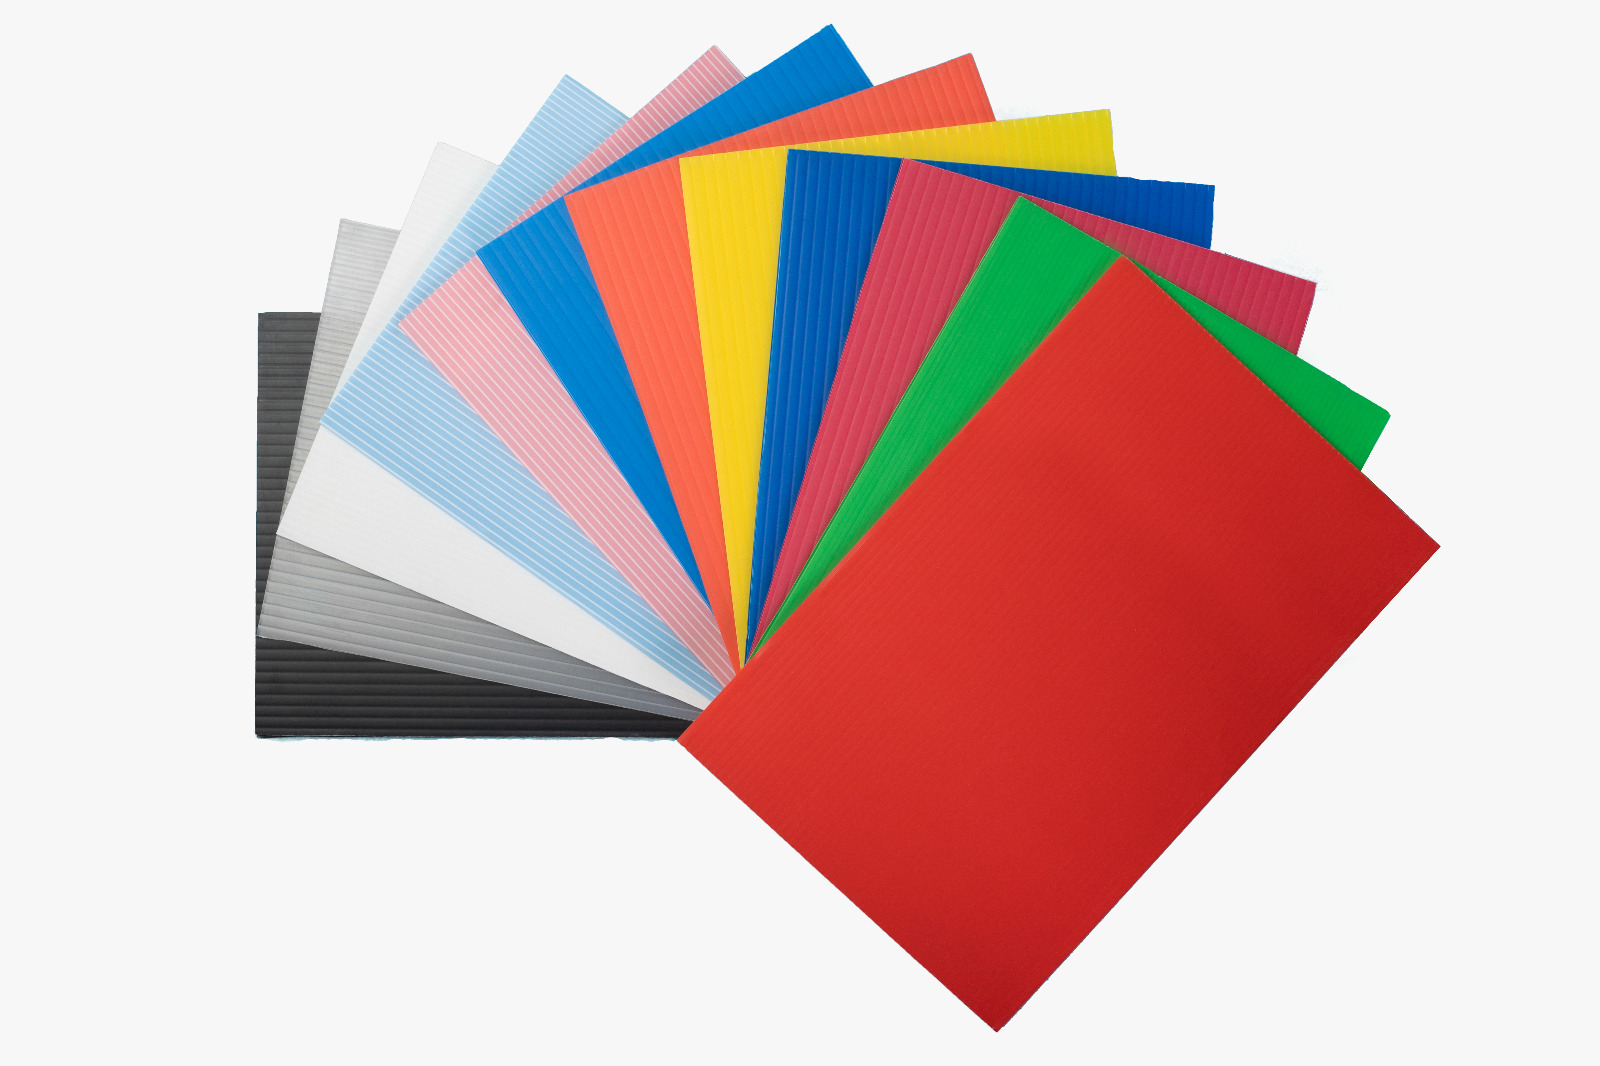 PP oluklu levha üzerine 5 renkli serigraf teknolojisi ile renkli baskılı tasarım